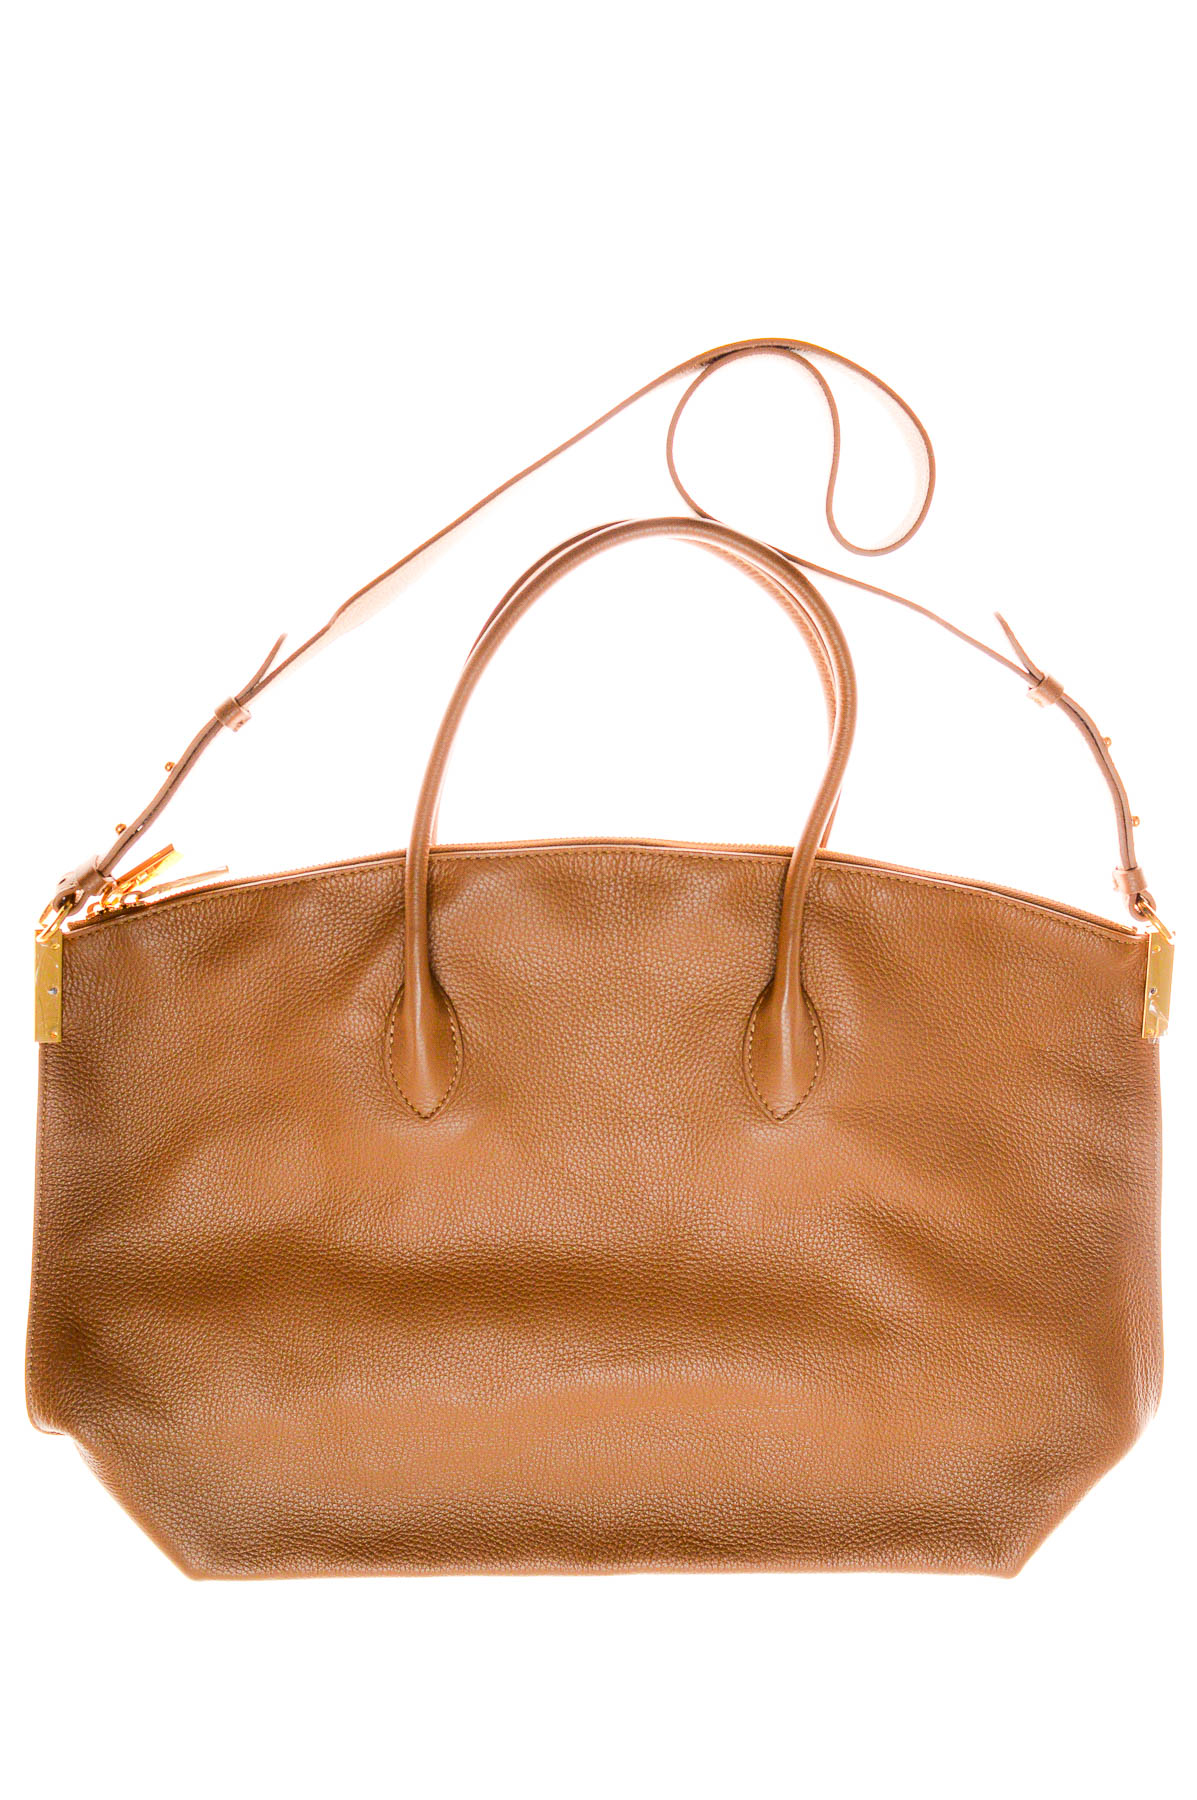 Women's bag - Coccinelle - 1